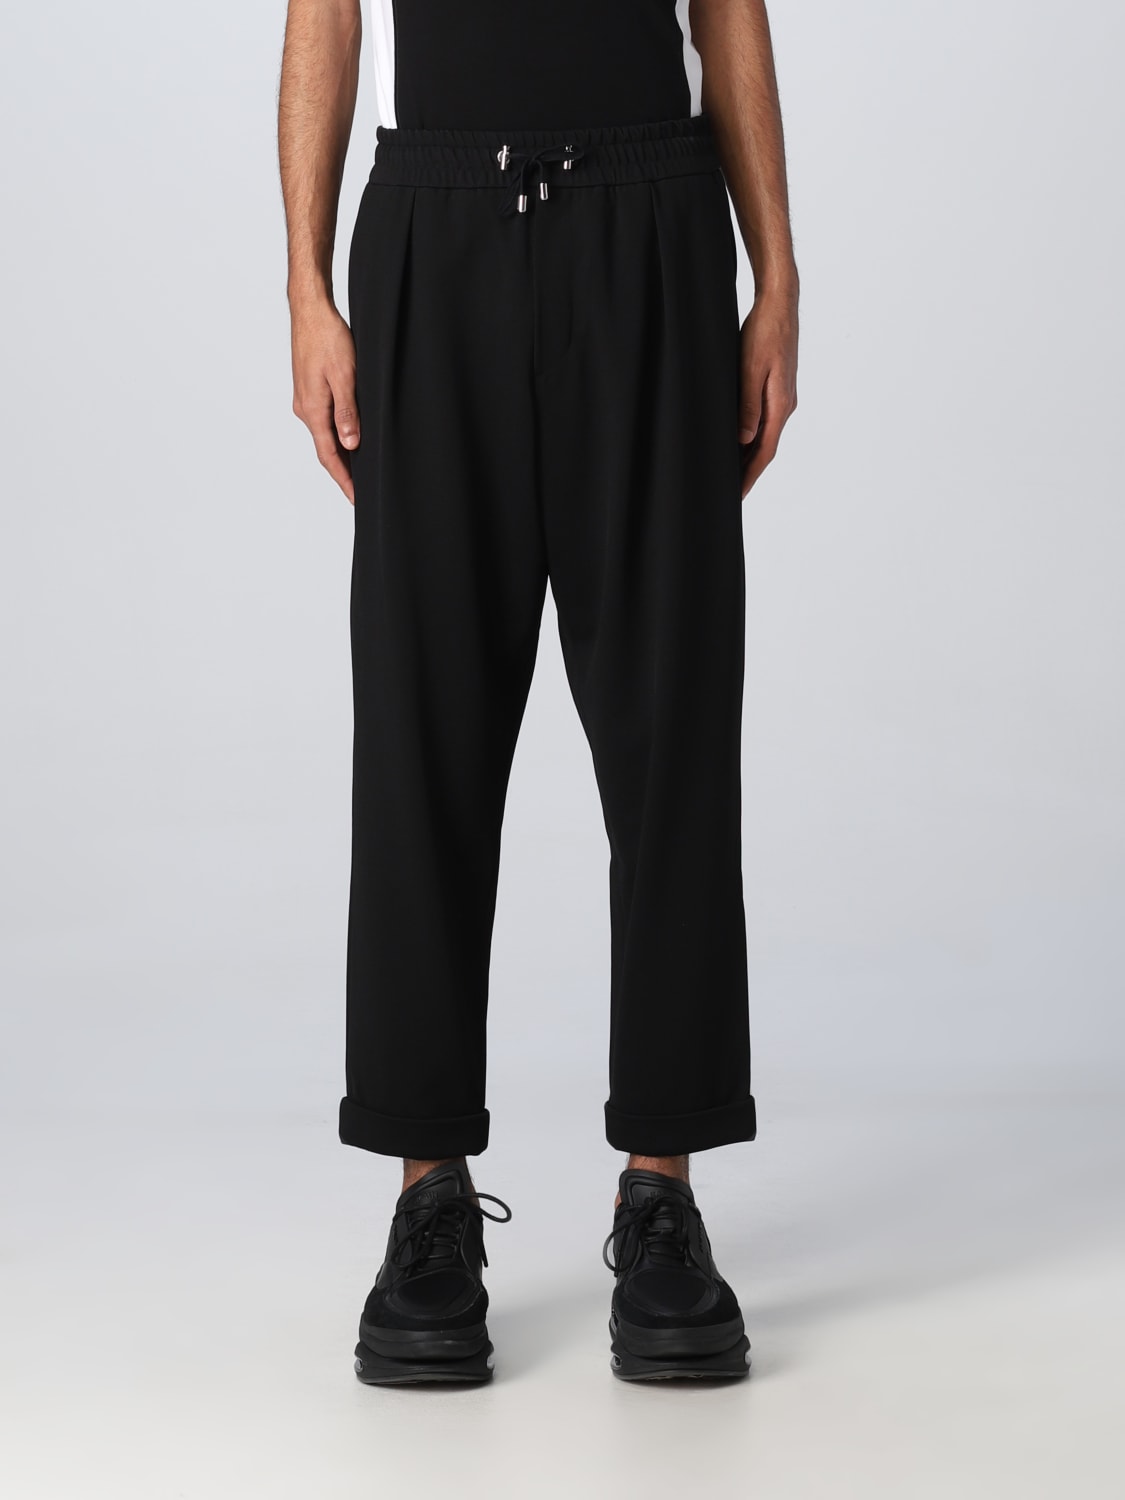 BALMAIN: stretch fabric trousers - Black | Balmain pants AH1PK005JE94 ...